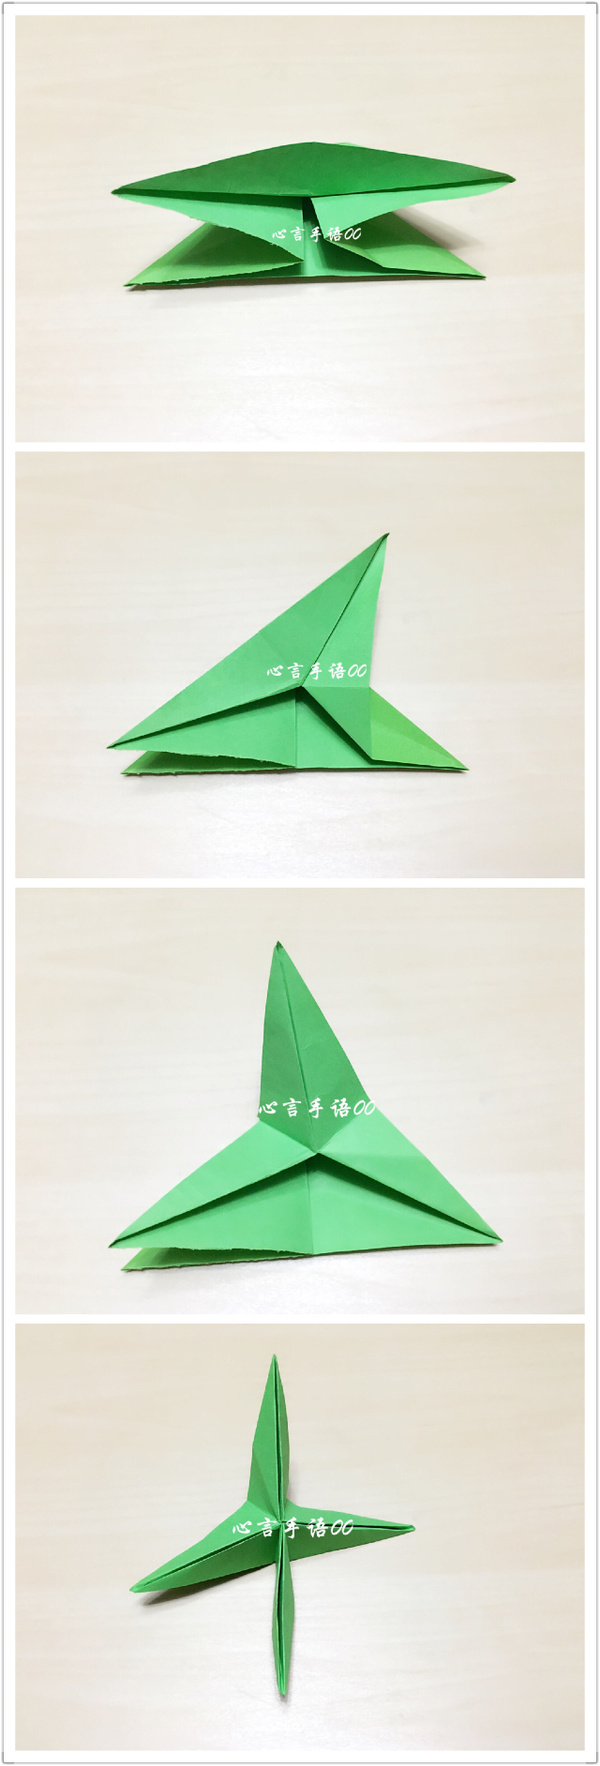 正方形纸对折再对折,再折出双三角形.